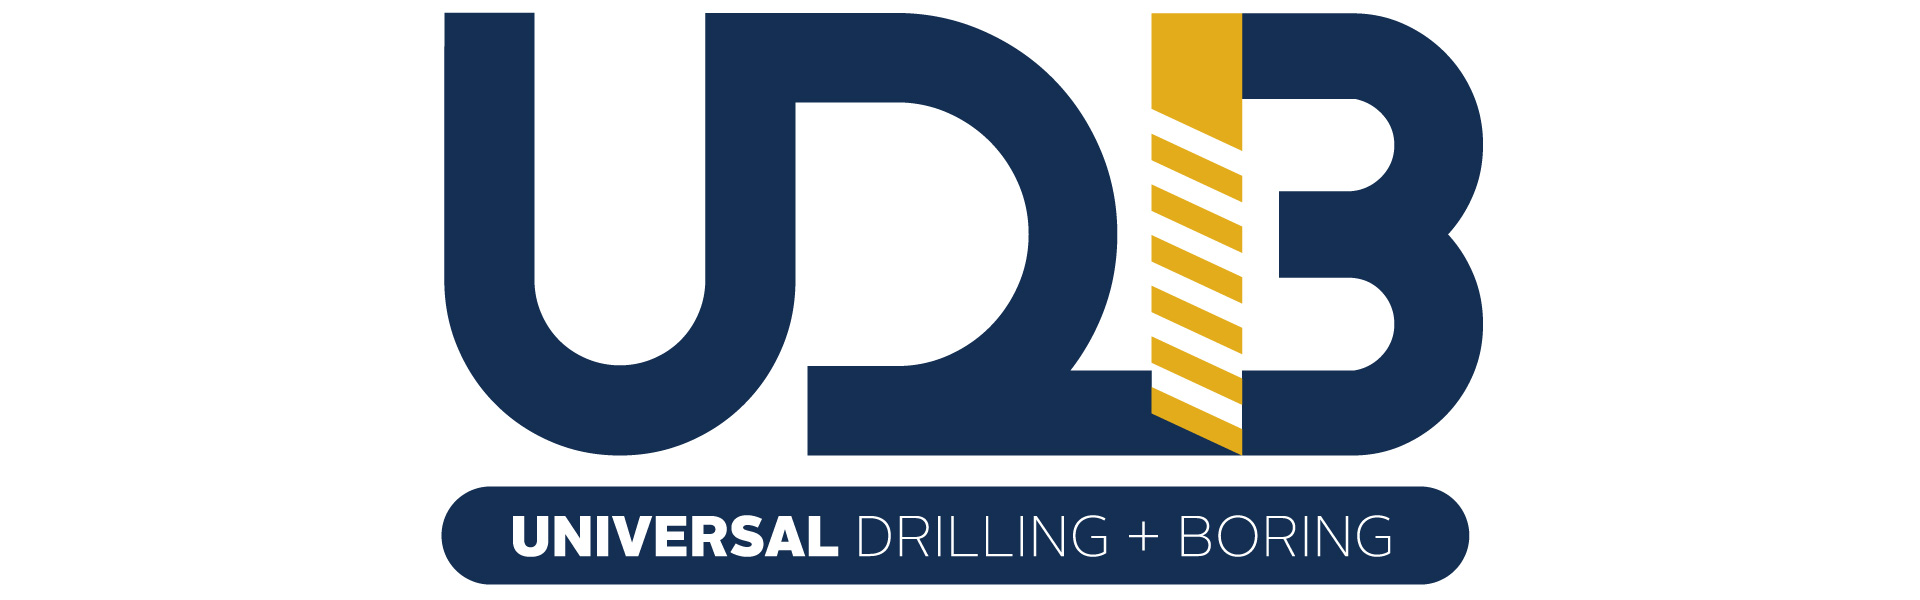 Universal Drilling + Boring Logo